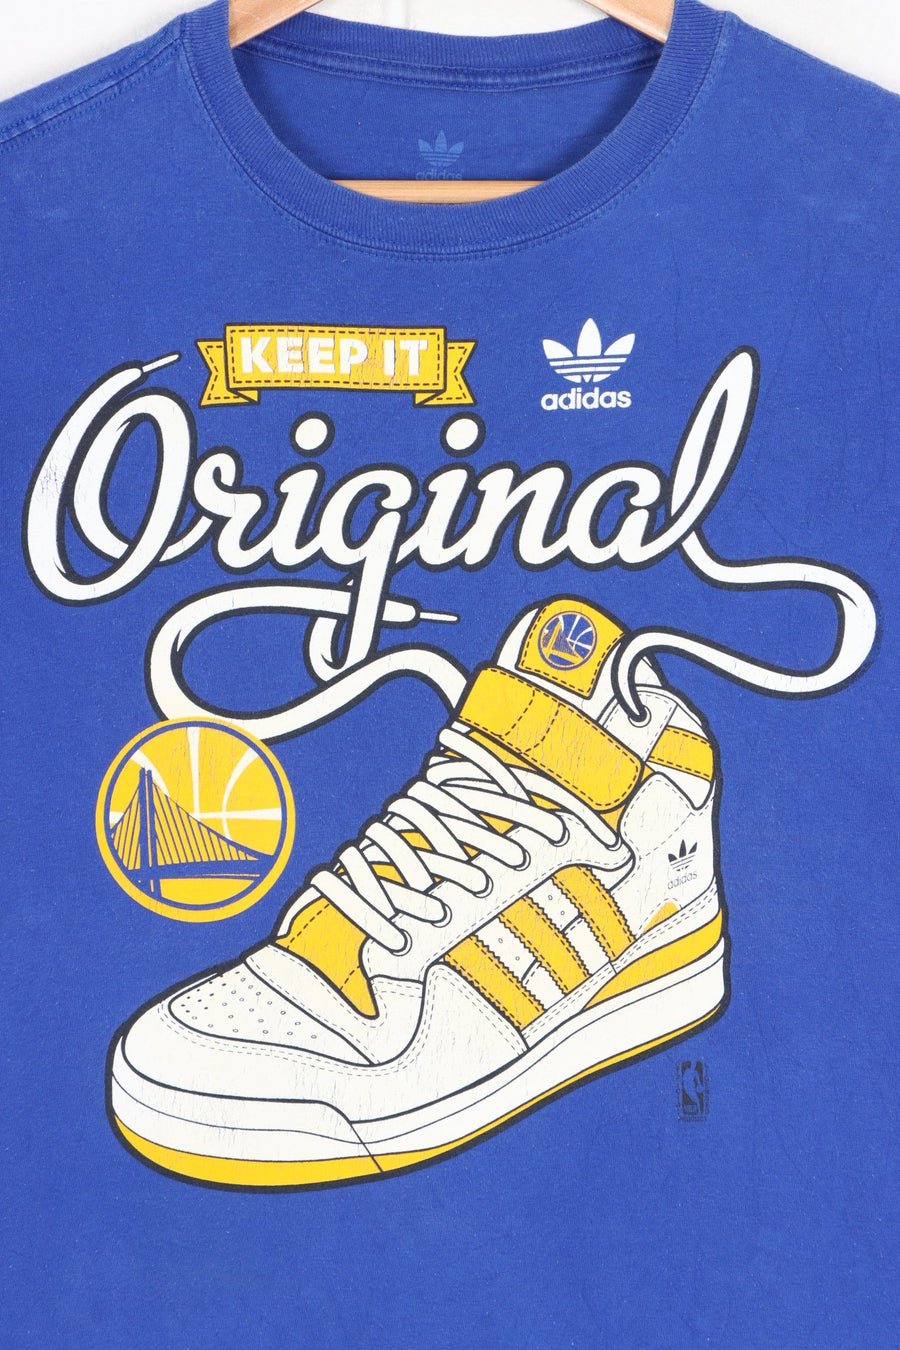 NBA Golden State Warriors ADIDAS "Keep It Original" Sneakers T-Shirt (M)